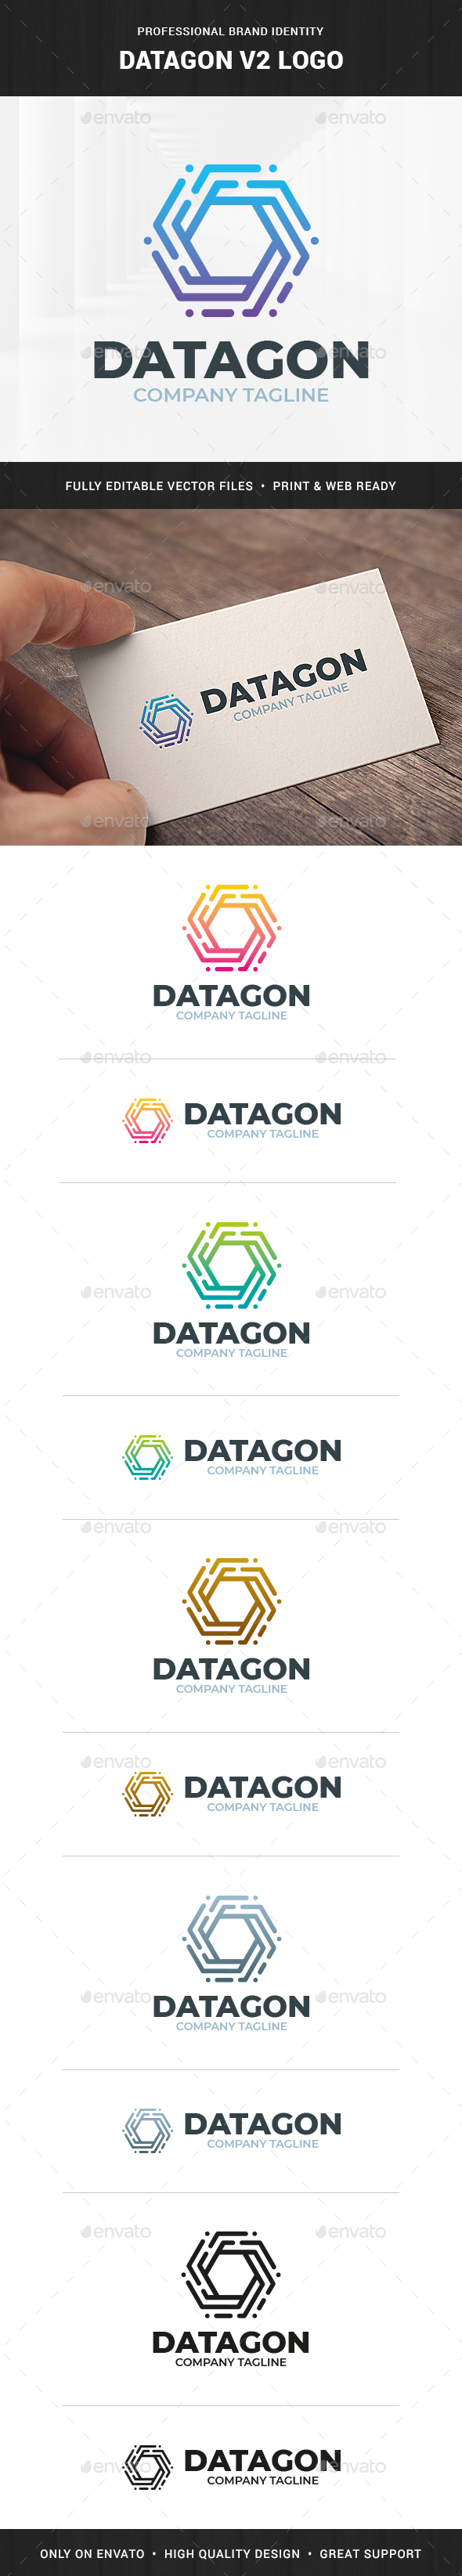 Datagon V2 Logo Template